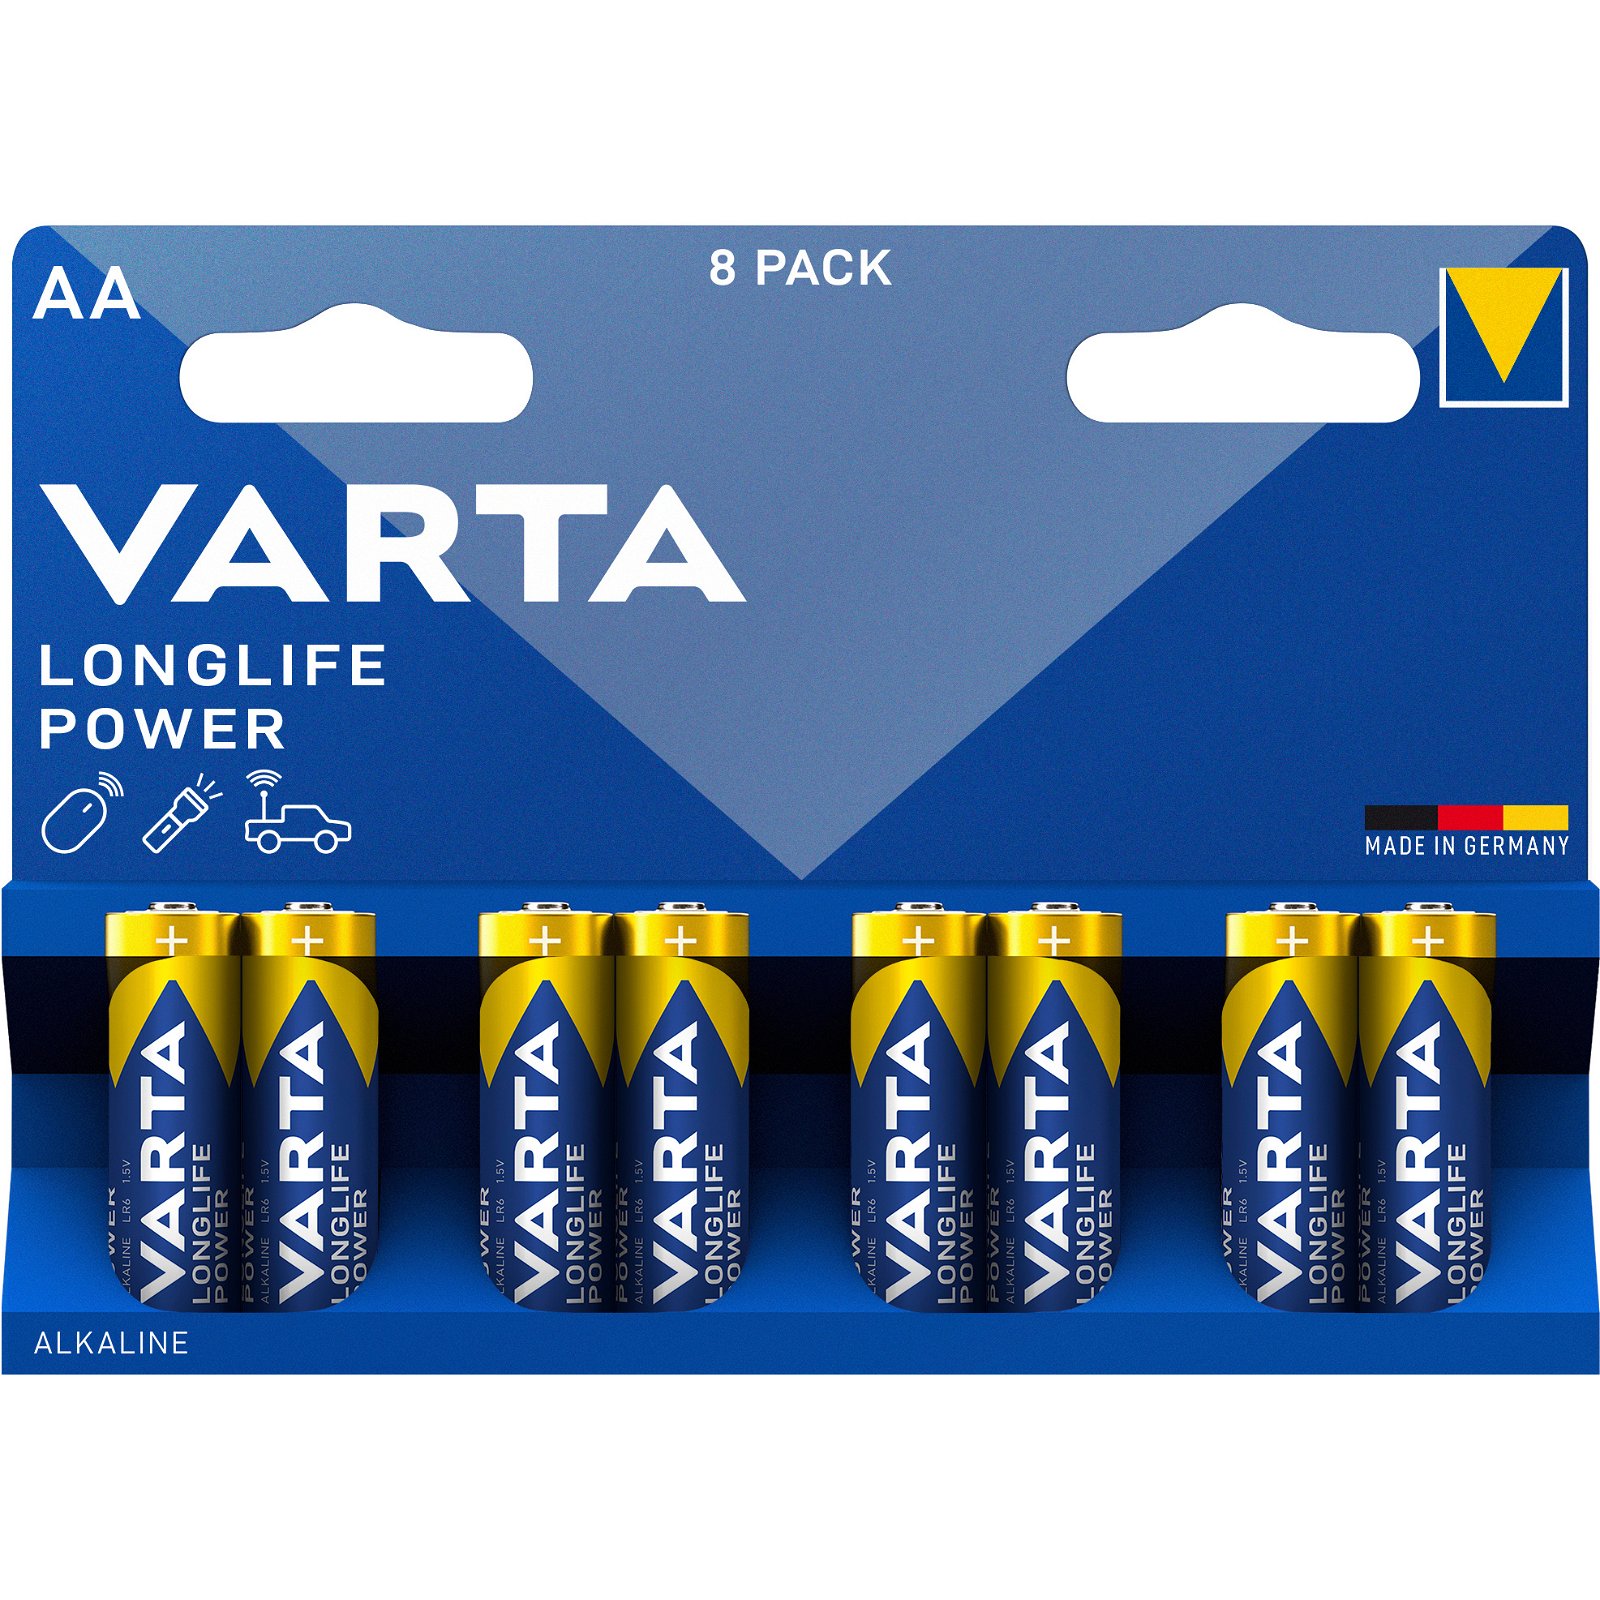 VARTA LongLife Power batteri AA/LR6 1.5 v 8 stk